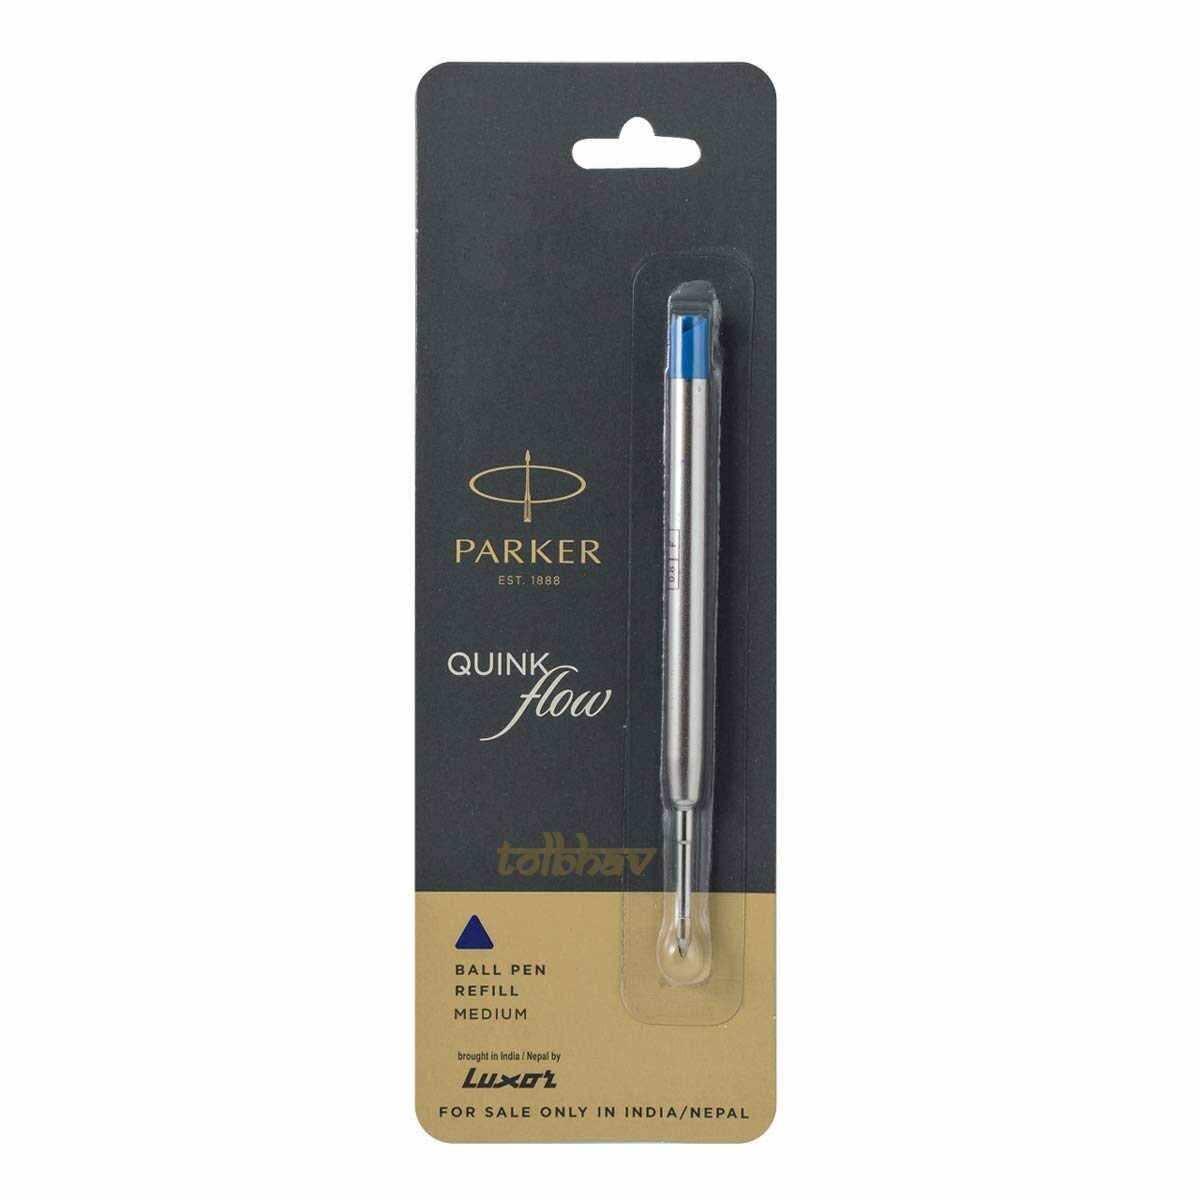 5 X Parker Quink Flow Ball Point Pen BP Refill Refills Blue Ink Medium Nib New PARKER 9000017416 - фотография #4